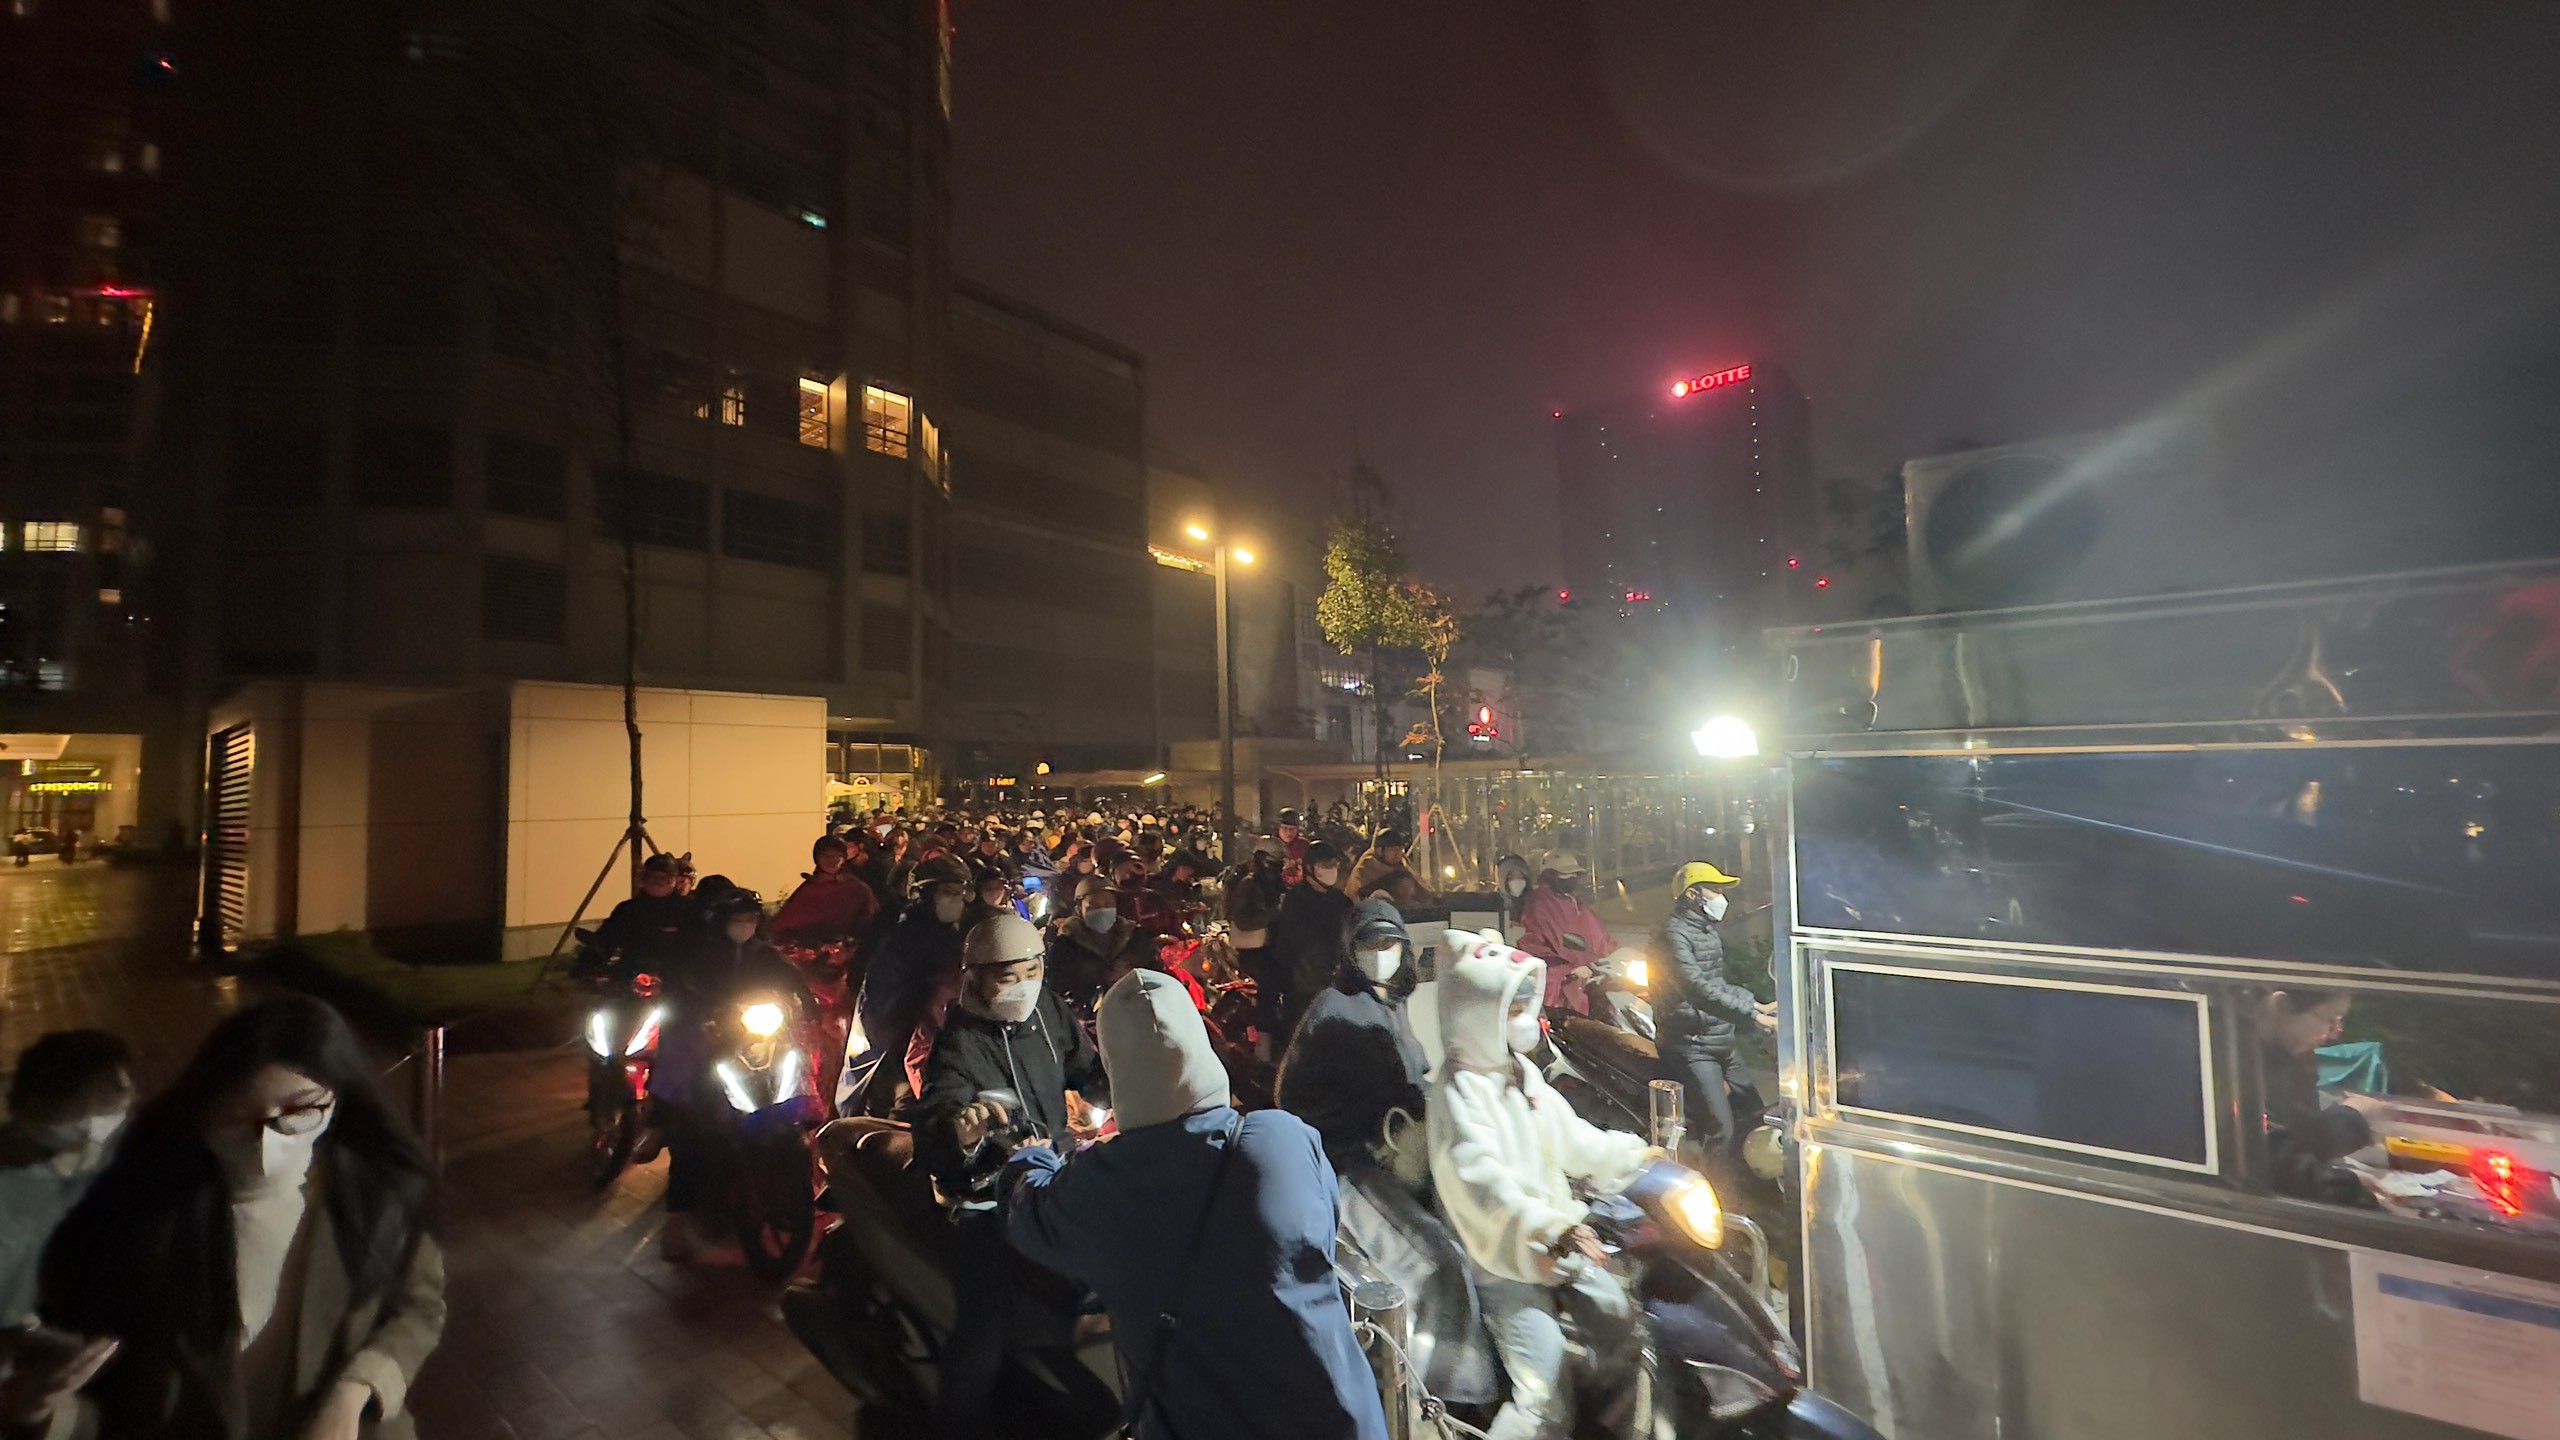 Sau khi buổi trình diễn ánh sáng kết thúc, hàng nghìn người ồ ạt đi lấy xe khiến các lối ra ô tô và xe máy của Lotte Mall đều bị ùn tắc.